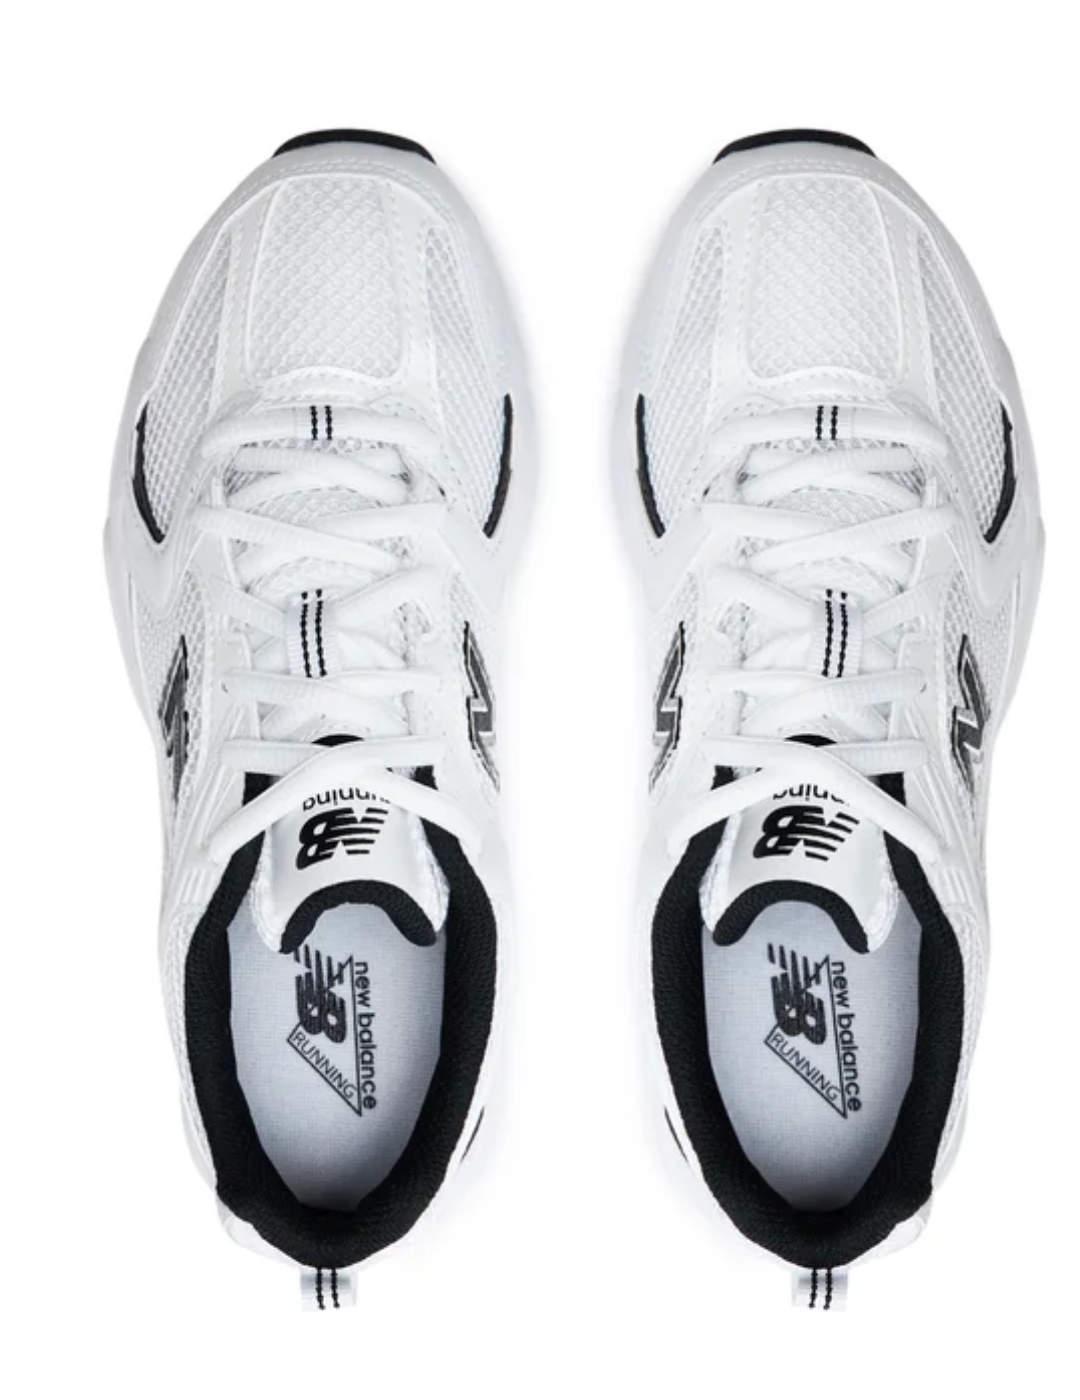 Zapatillas New Balance 530 blanco y negro unisex